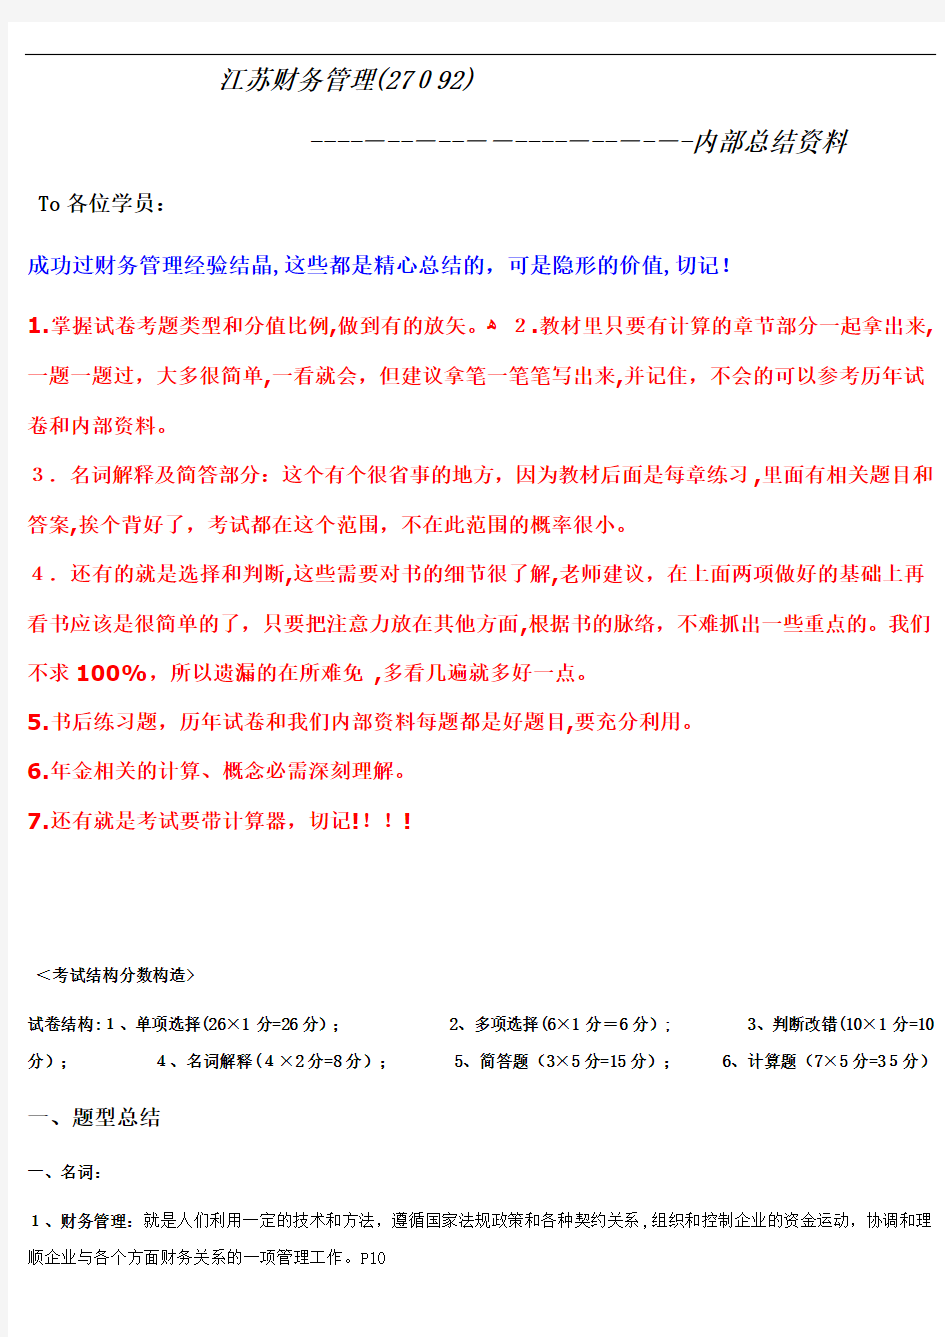 江苏省自考财务管理(27092)内部资料